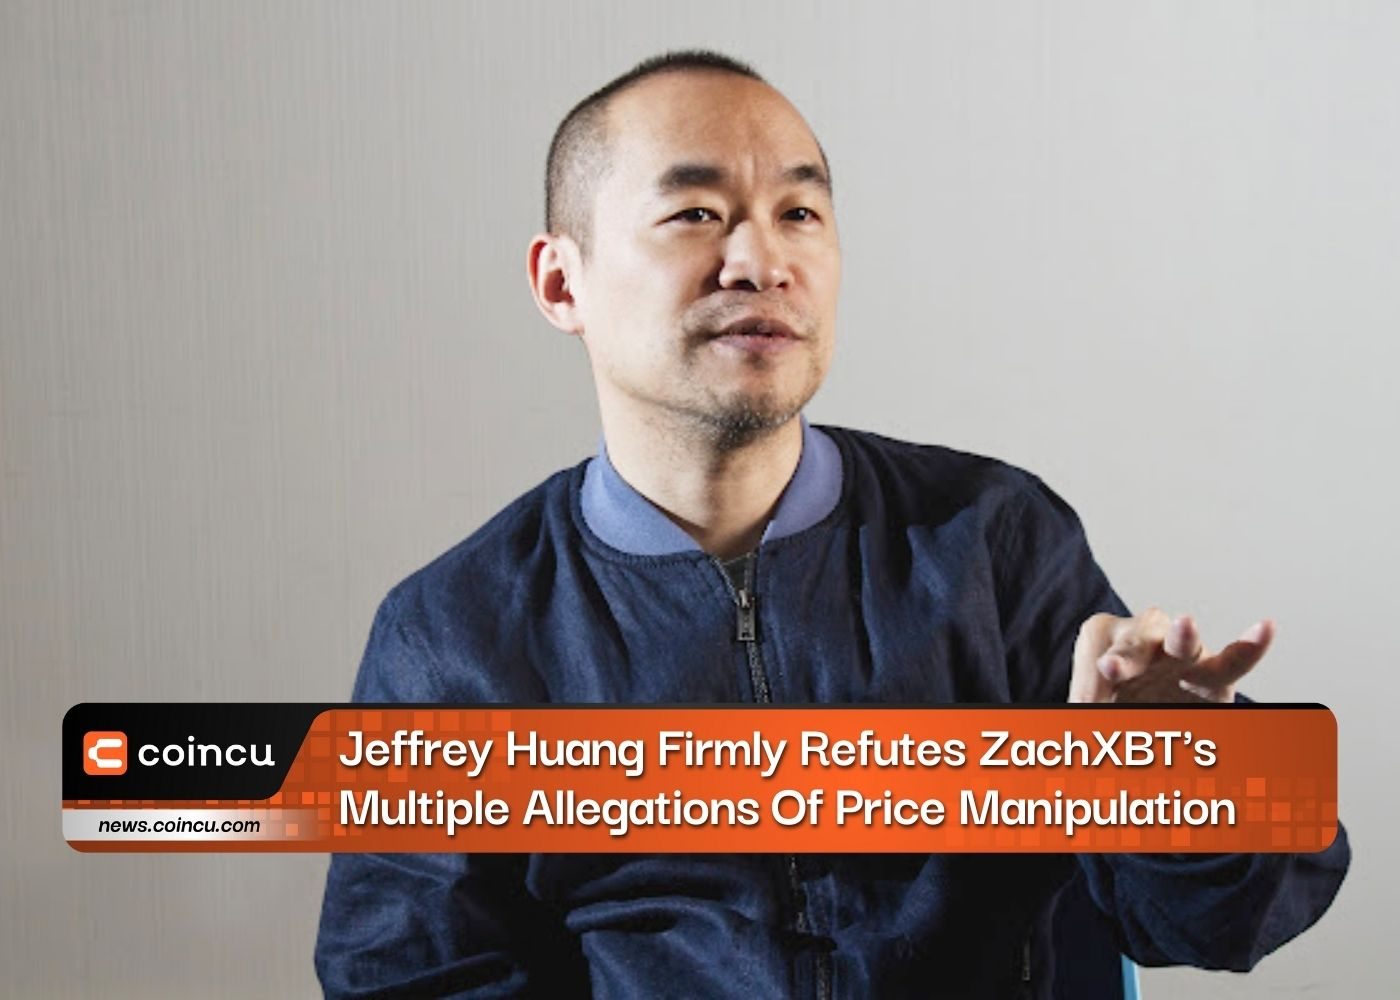 Jeffrey Huang refuta firmemente las múltiples acusaciones de manipulación de precios de ZachXBT